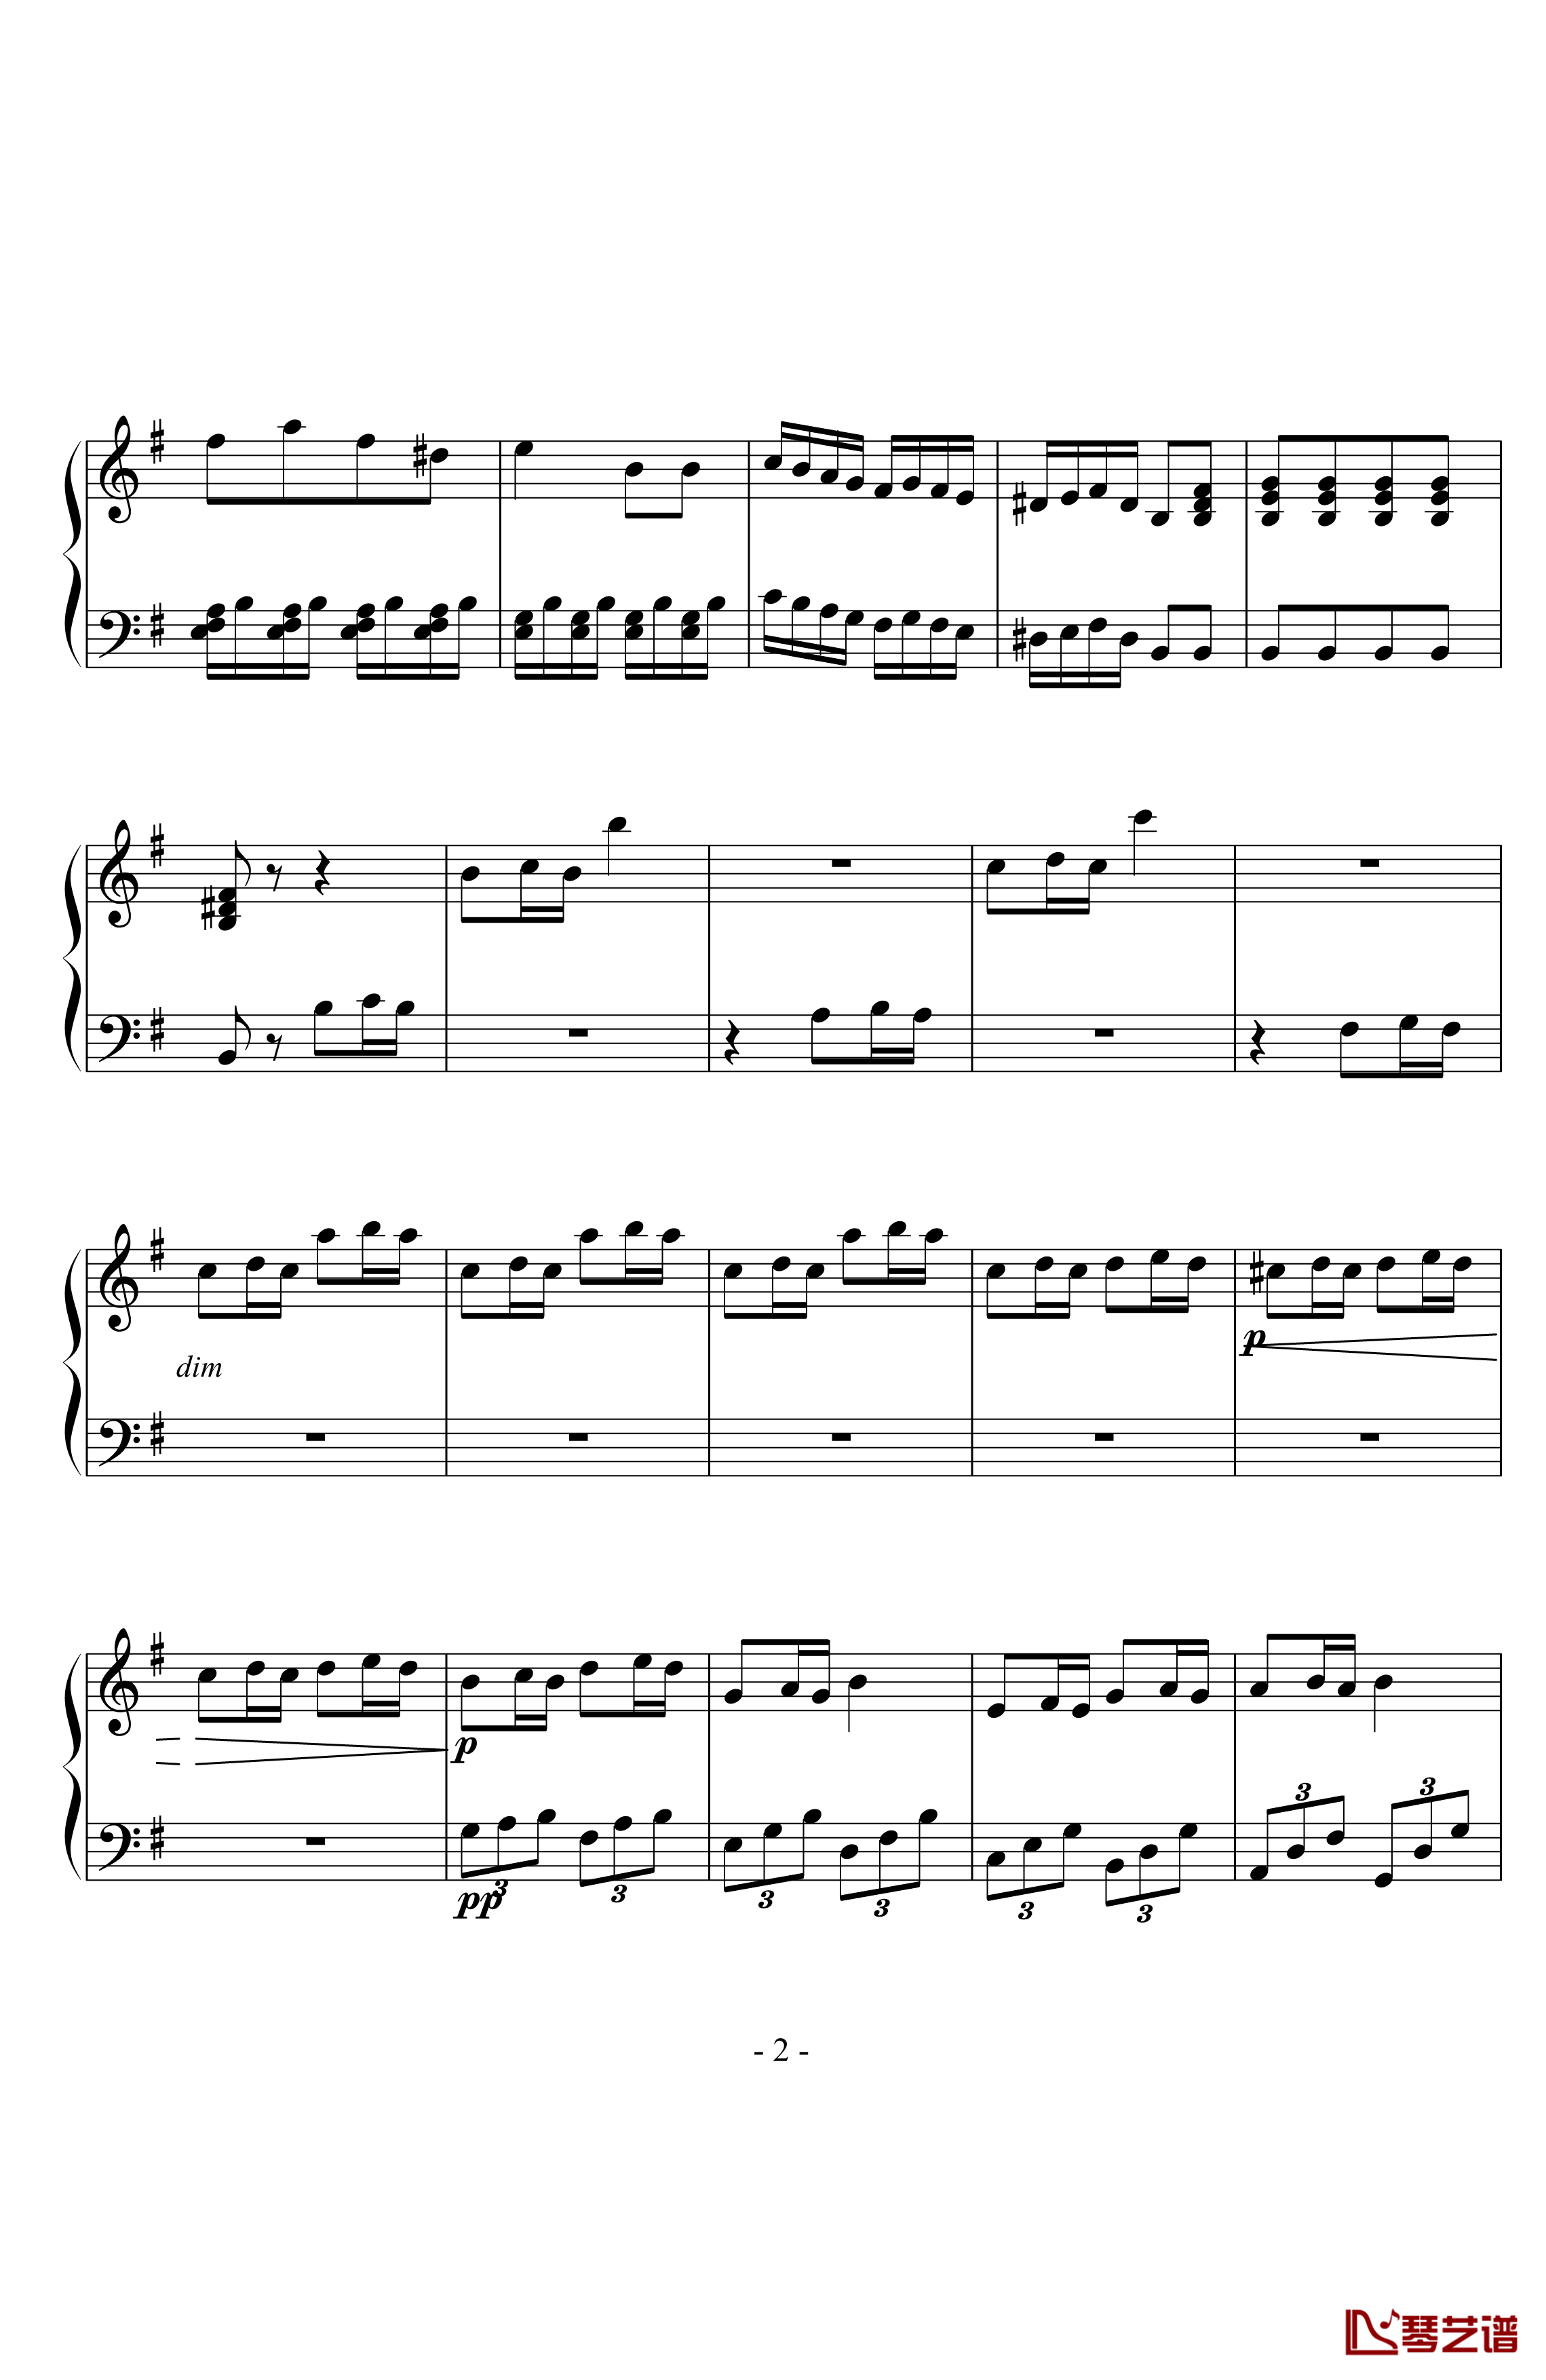 贝多芬第二十五钢琴奏鸣曲钢琴谱-贝多芬-beethoven2